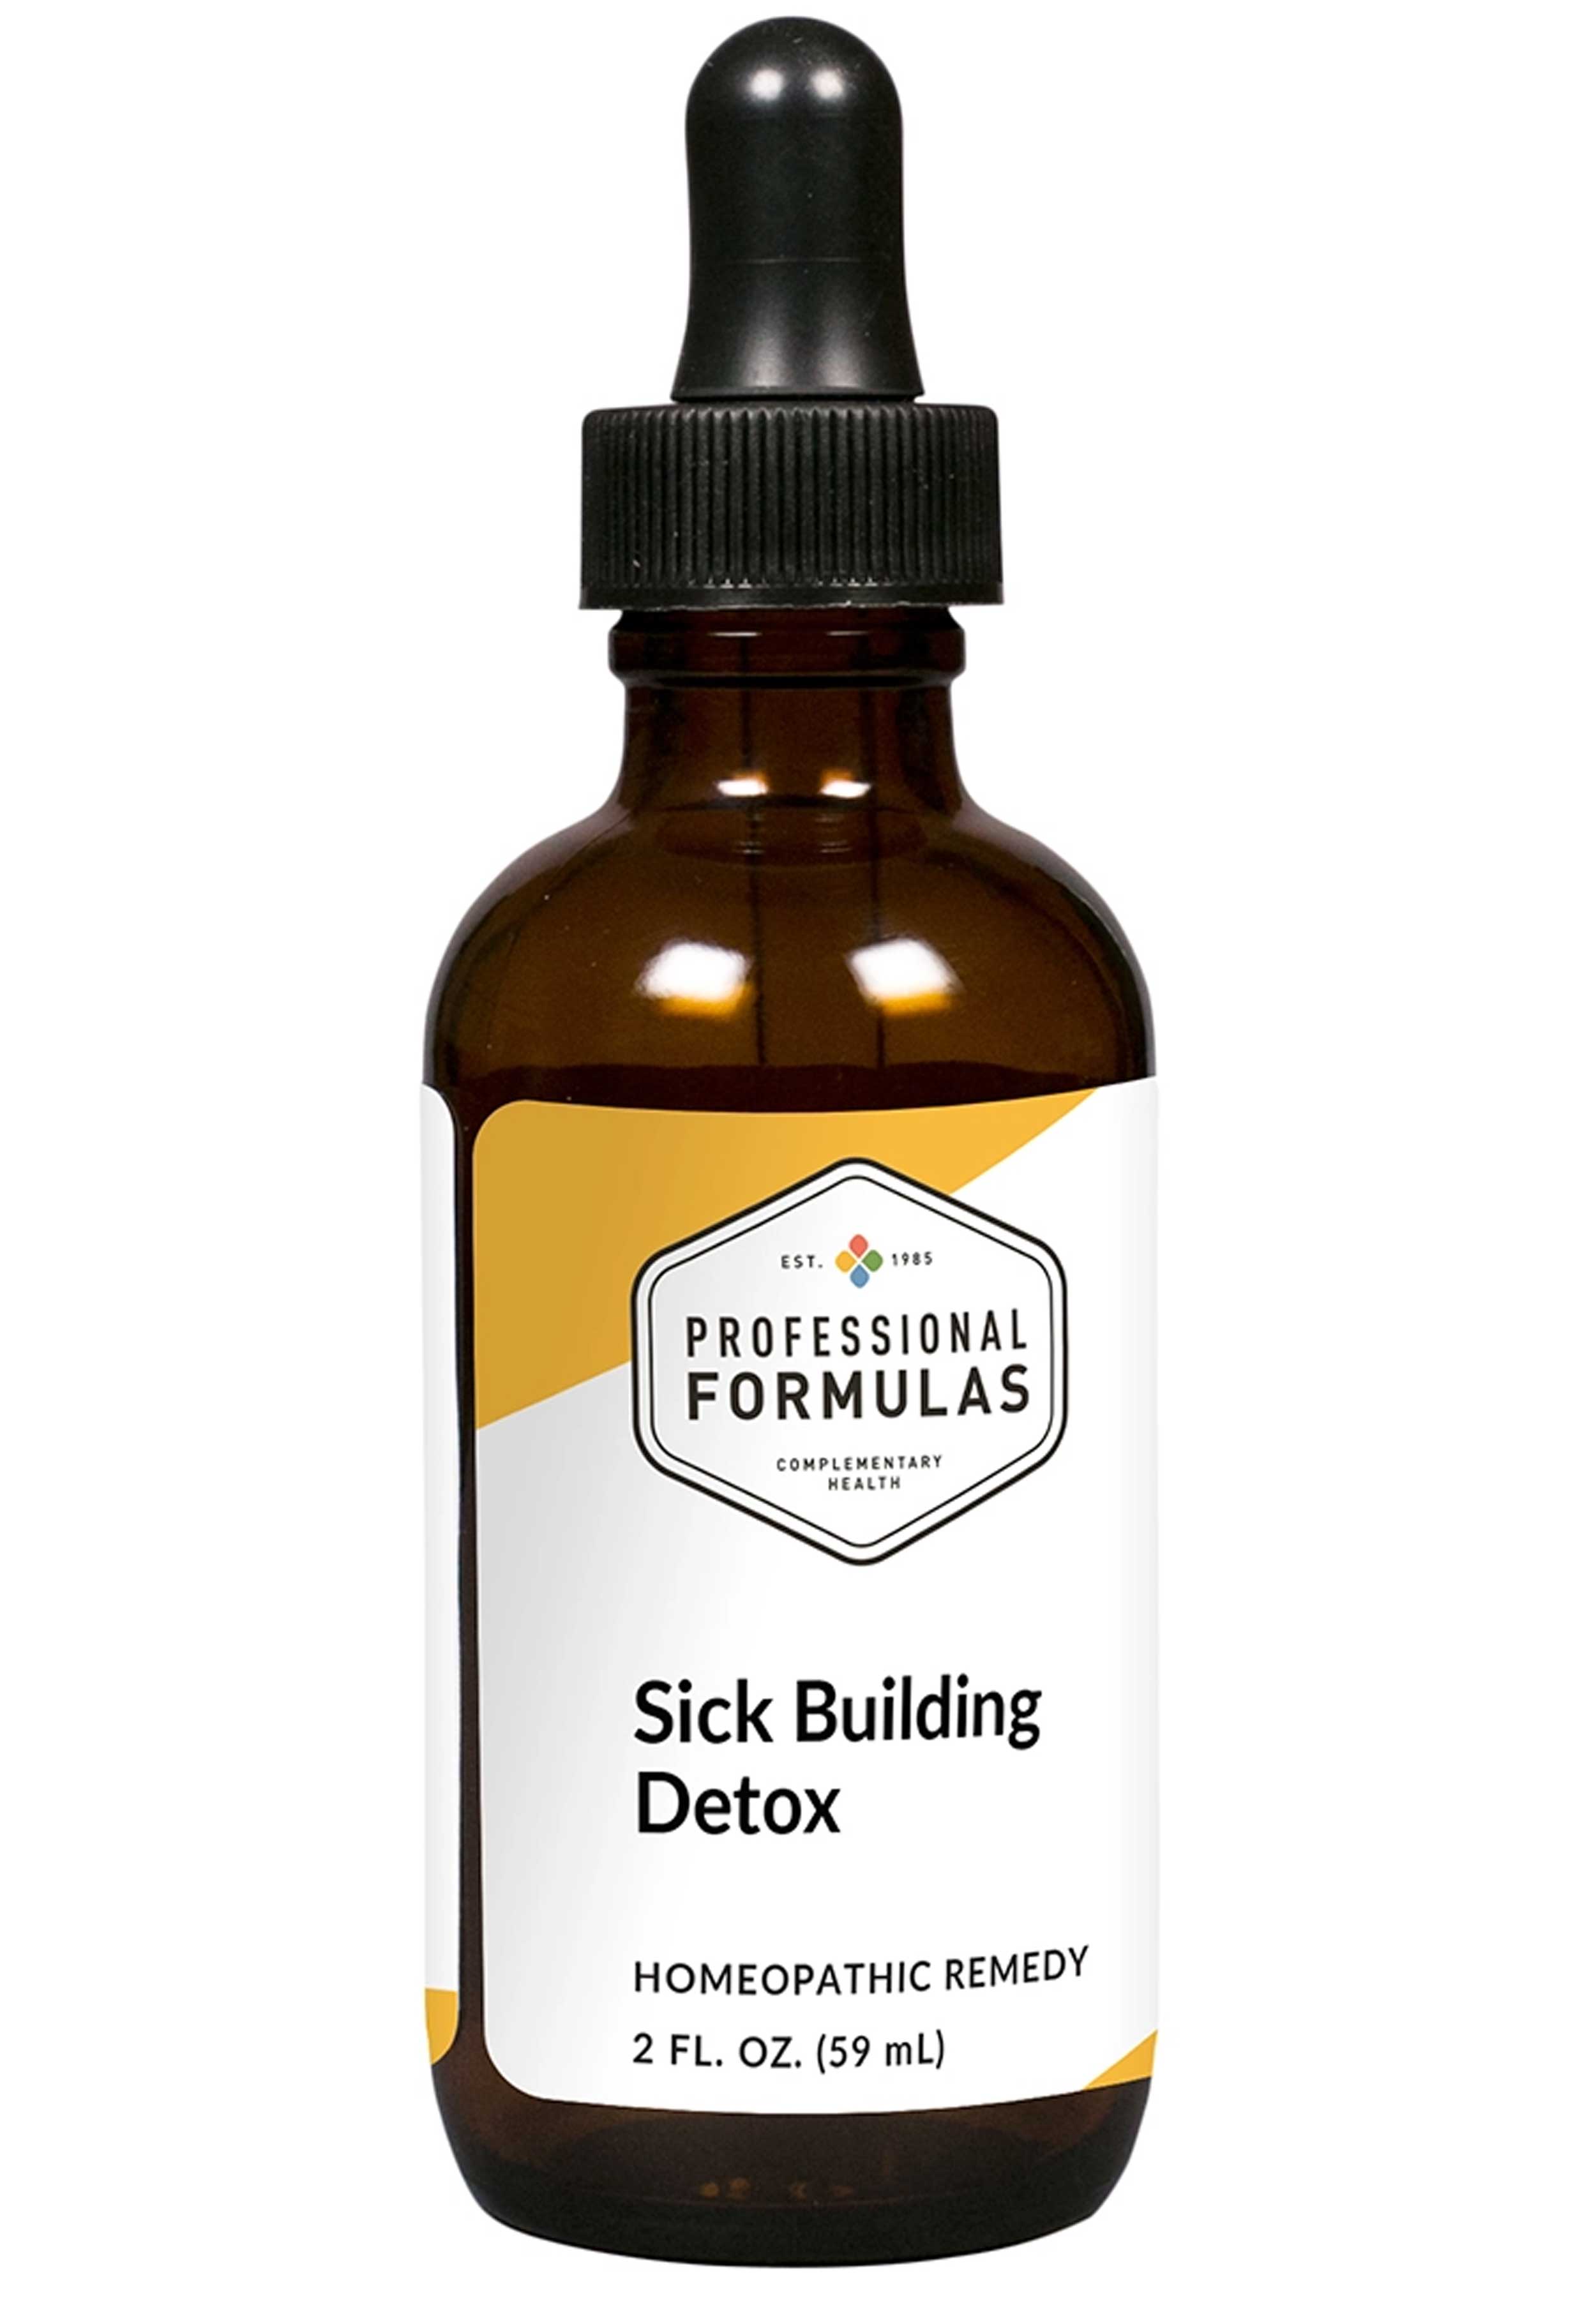 Professional Formulas Sick Building Detox